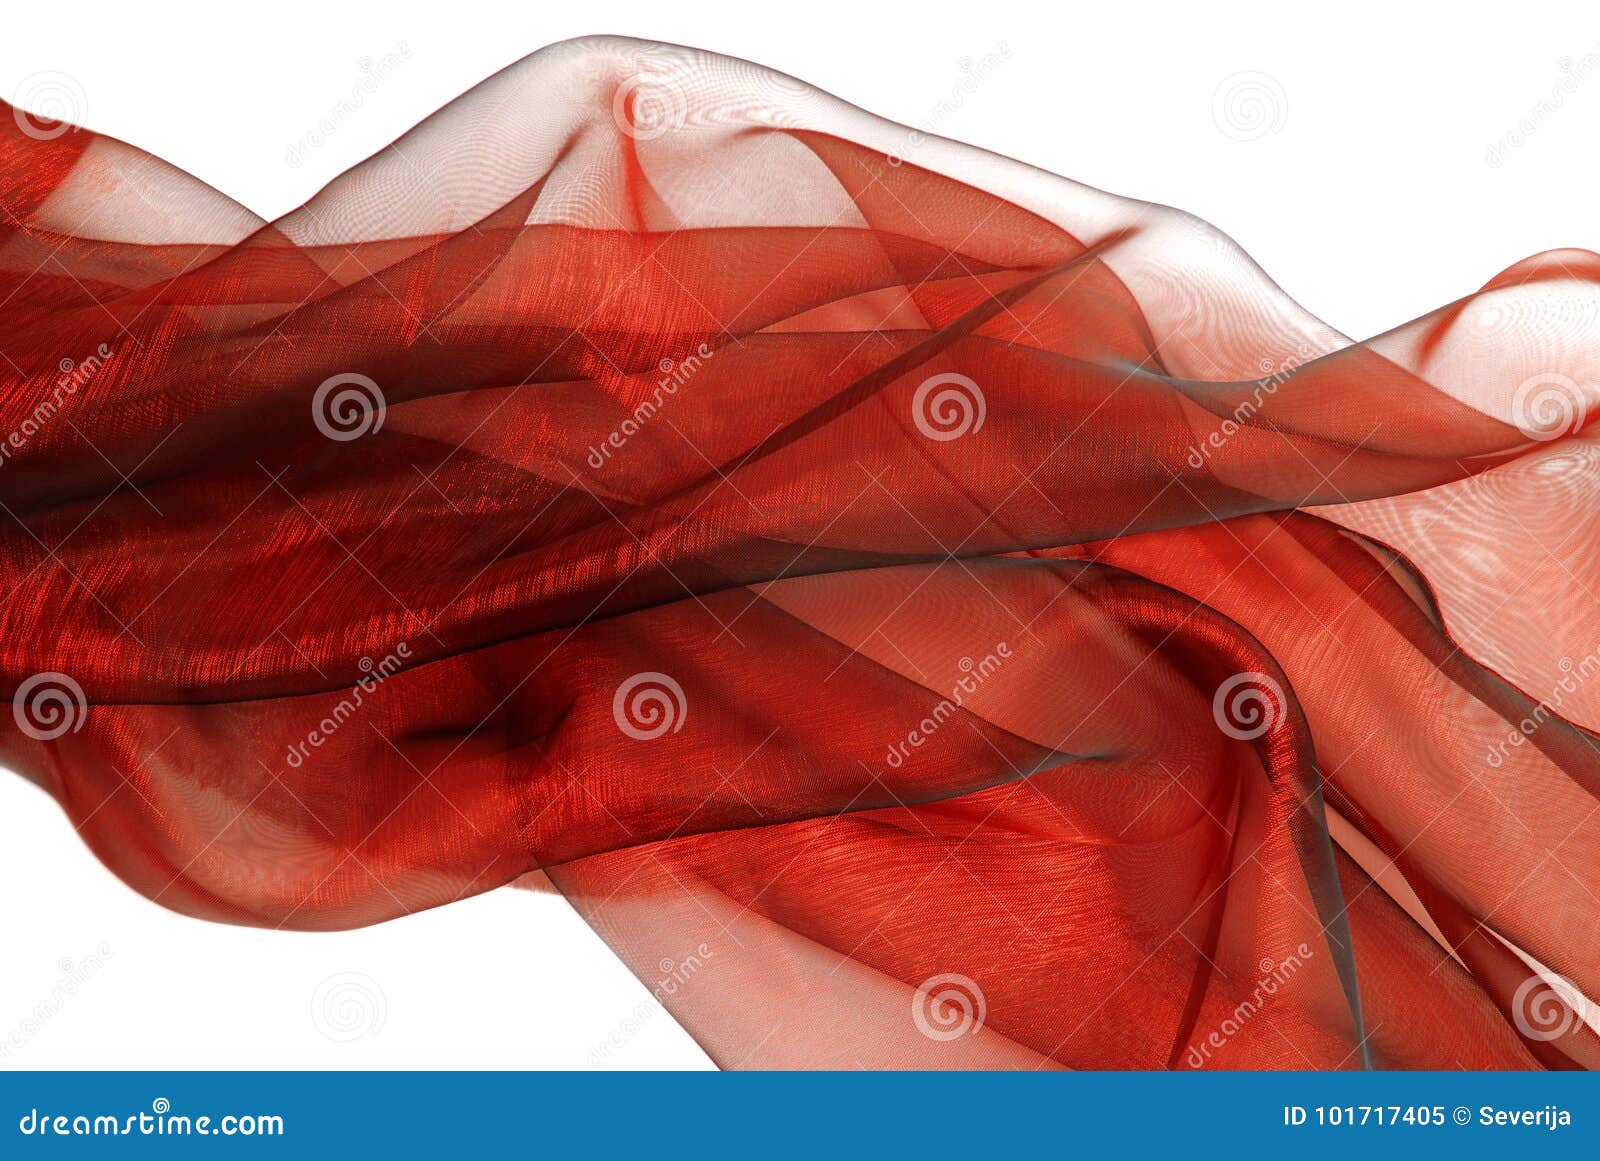 Tessuto Rosso Ondulato Dell'organza Immagine Stock - Immagine di